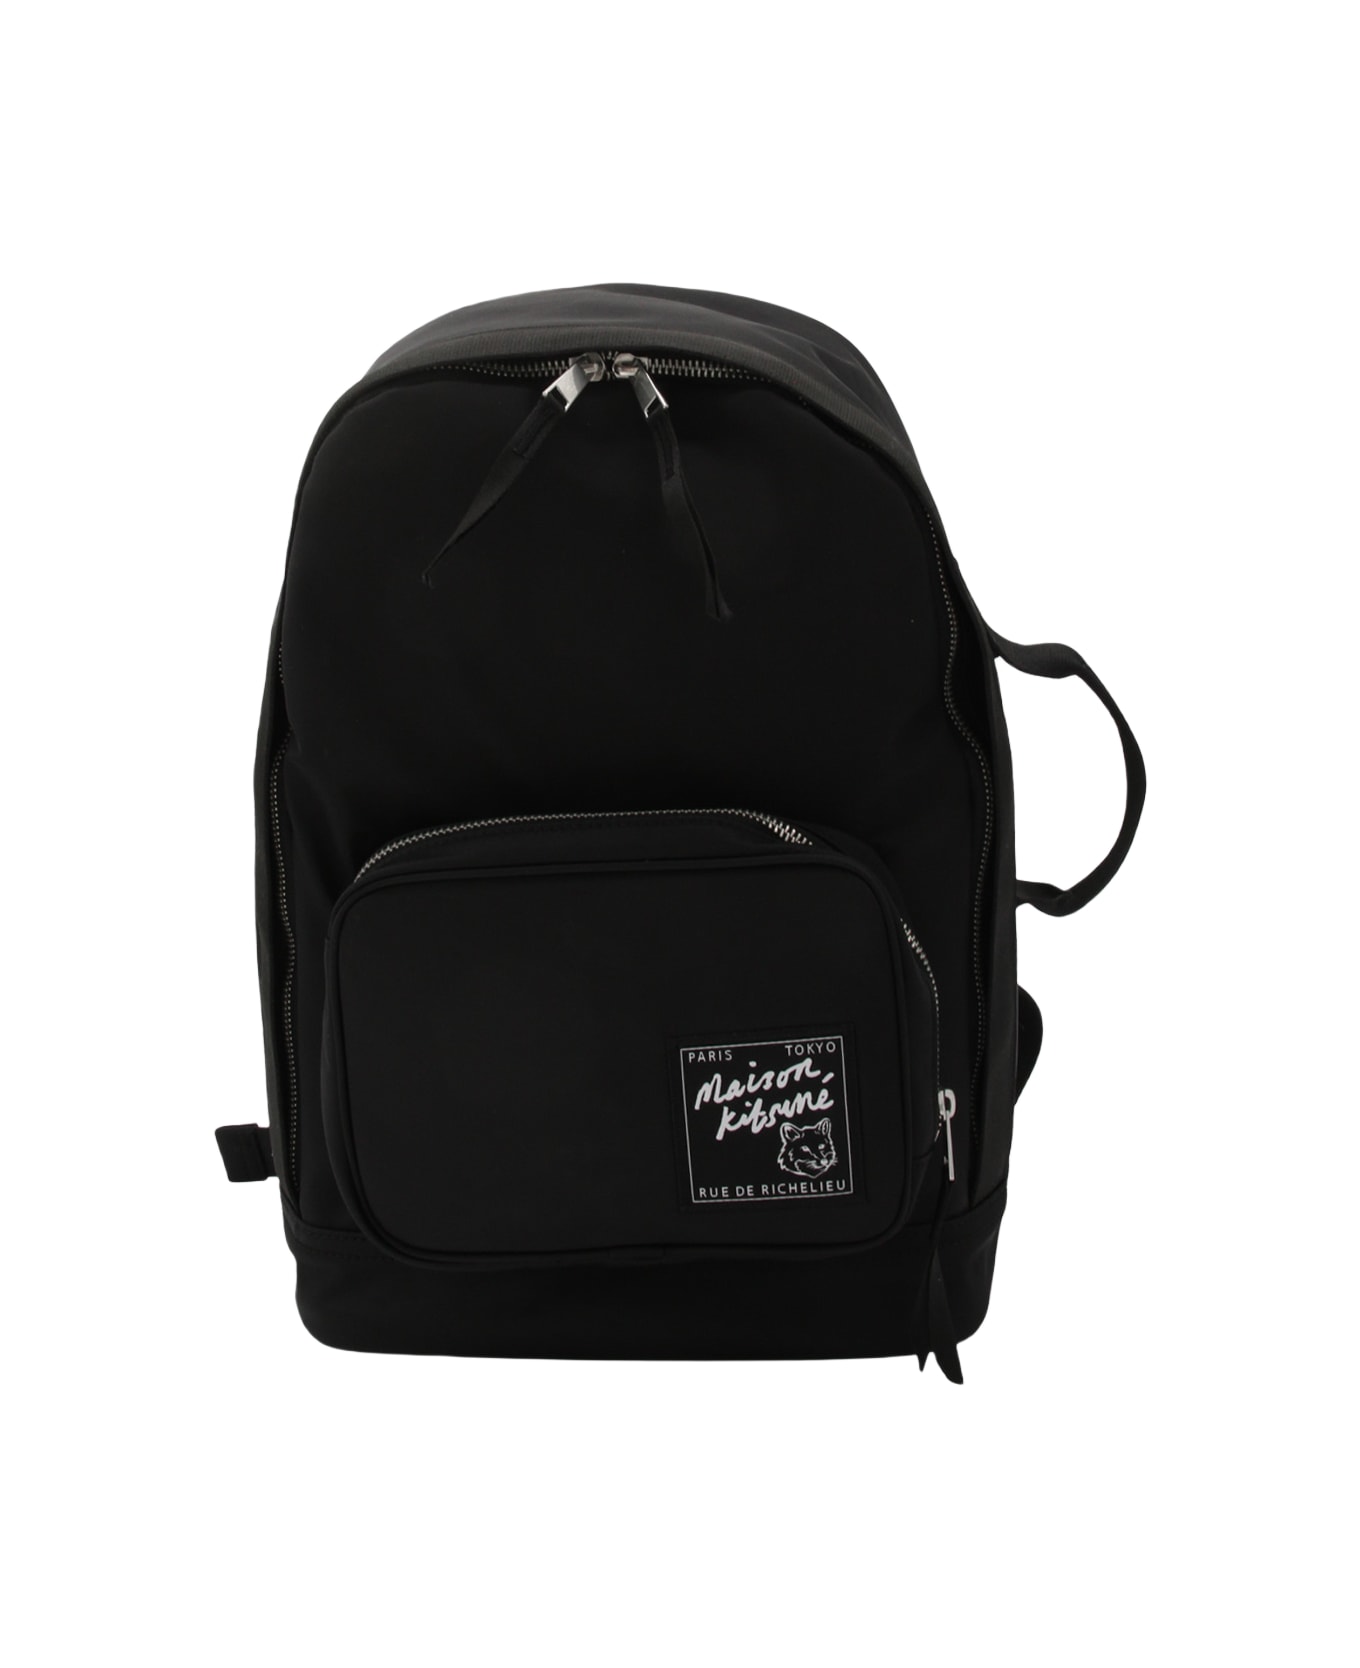 Maison Kitsuné Black Backpacks - Black